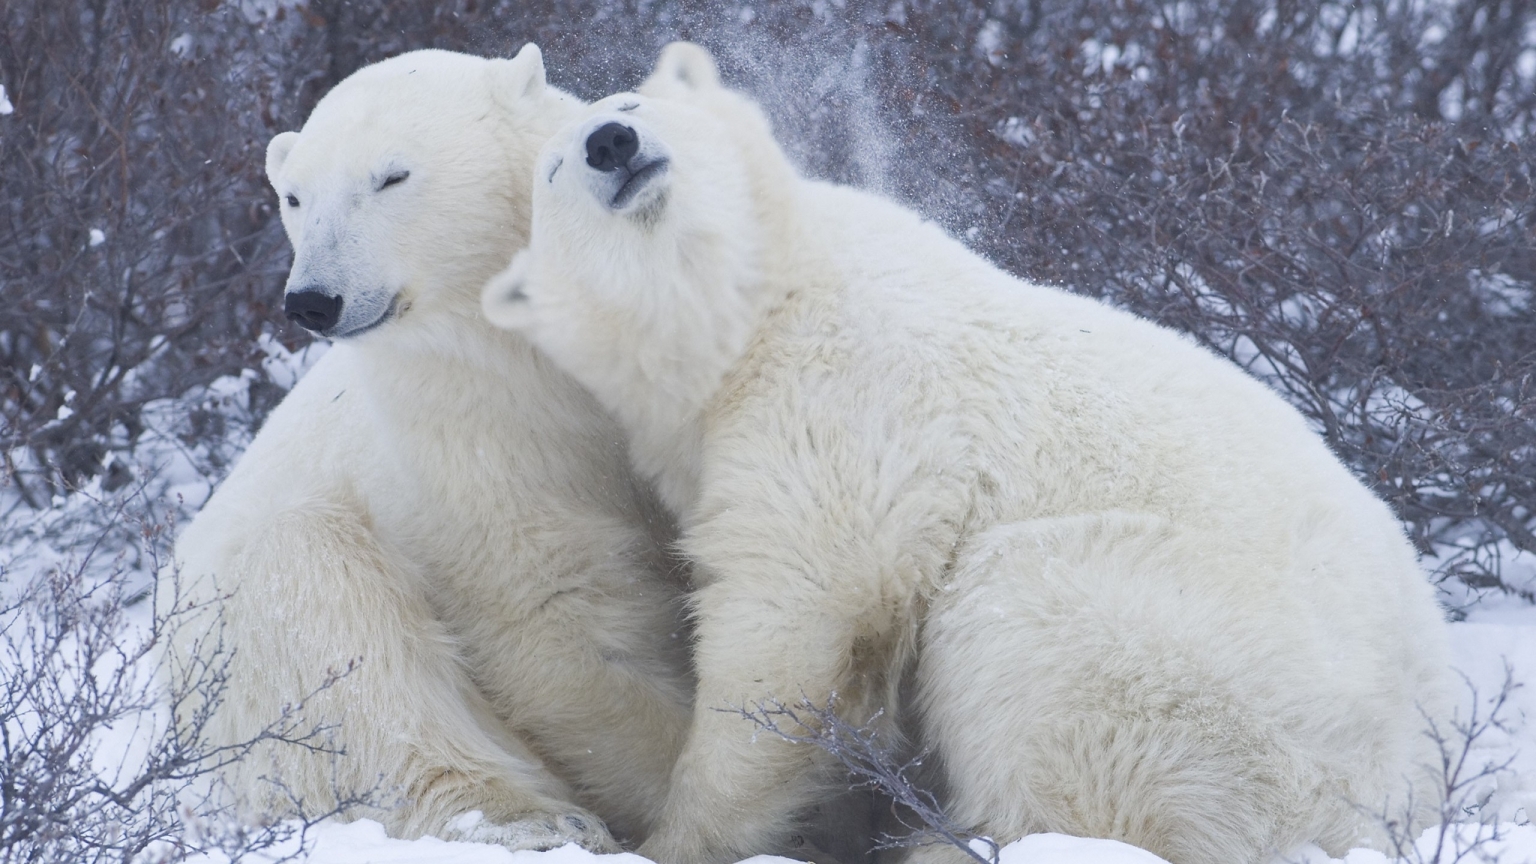 Cute Polar Bears for 1536 x 864 HDTV resolution